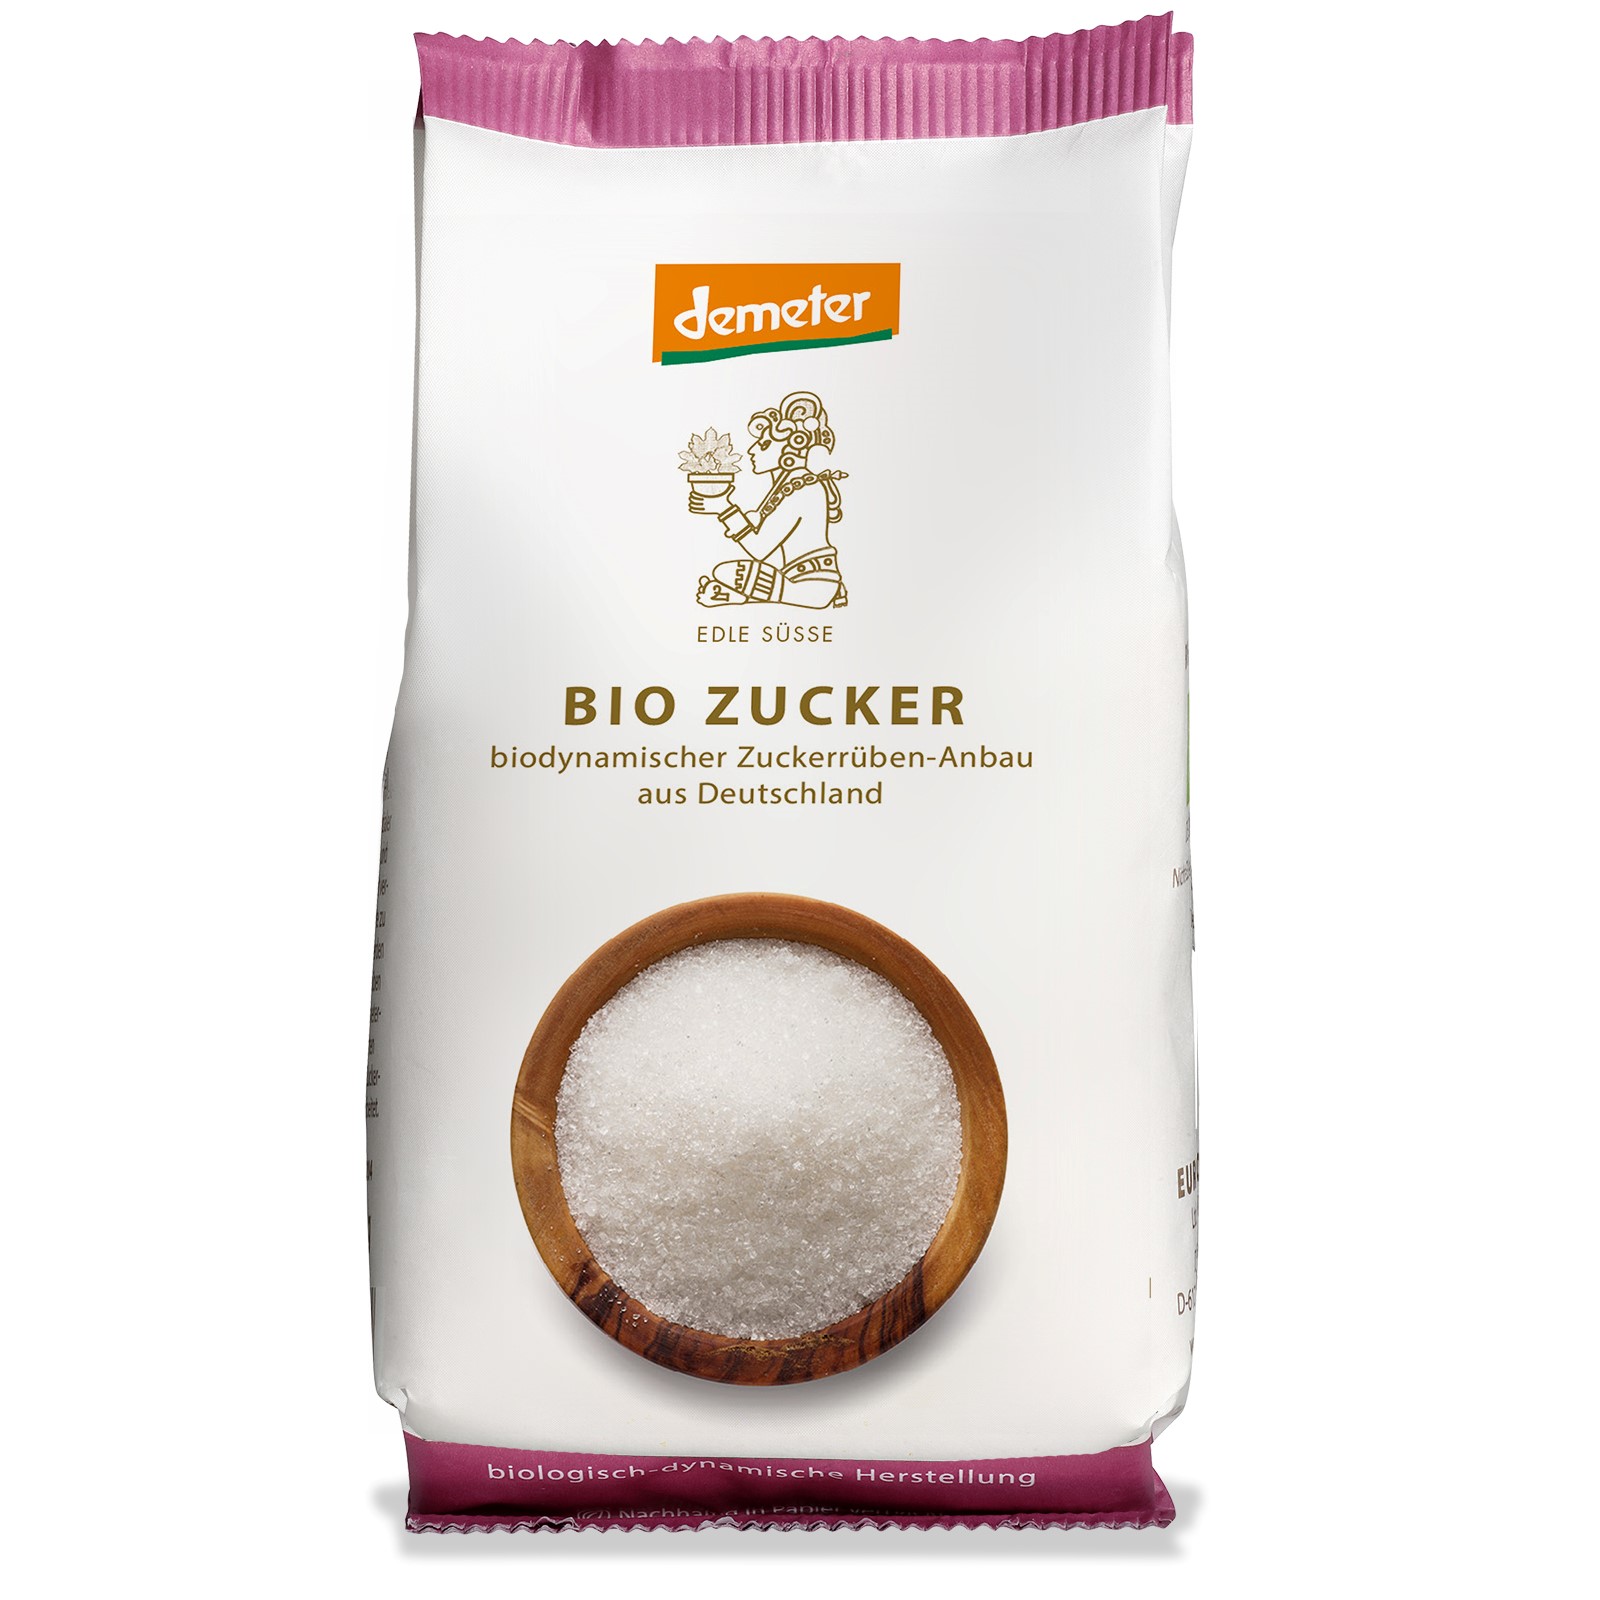 Picture of Bio Zucker, 500g, Papier-Faltbodenbeutel